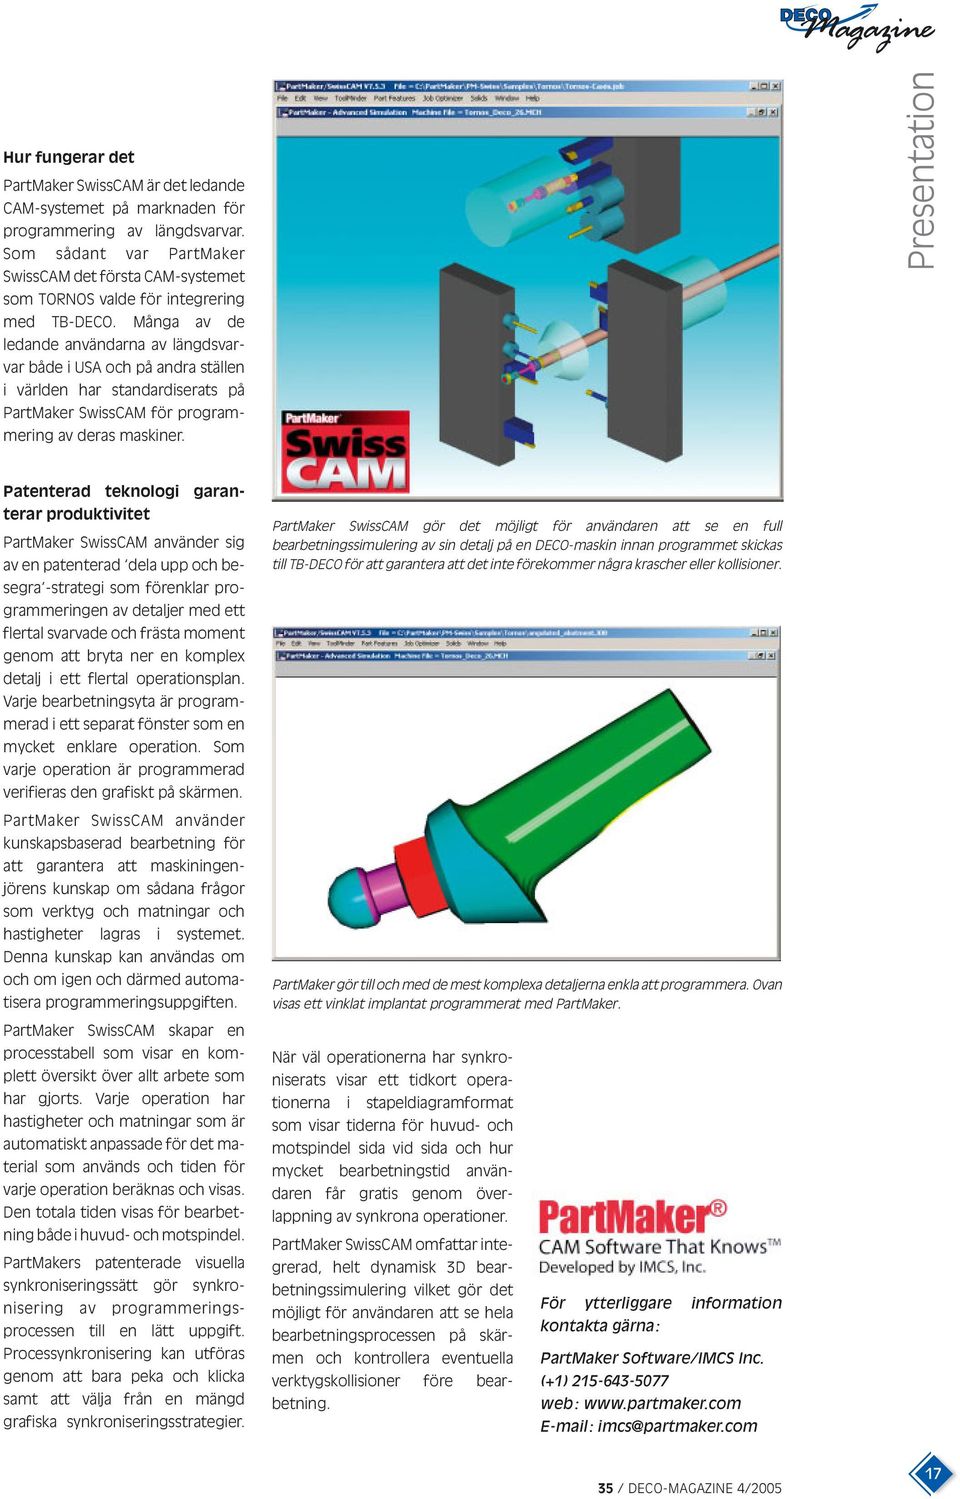 Många av de ledande användarna av längdsvarvar både i USA och på andra ställen i världen har standardiserats på PartMaker SwissCAM för programmering av deras maskiner.